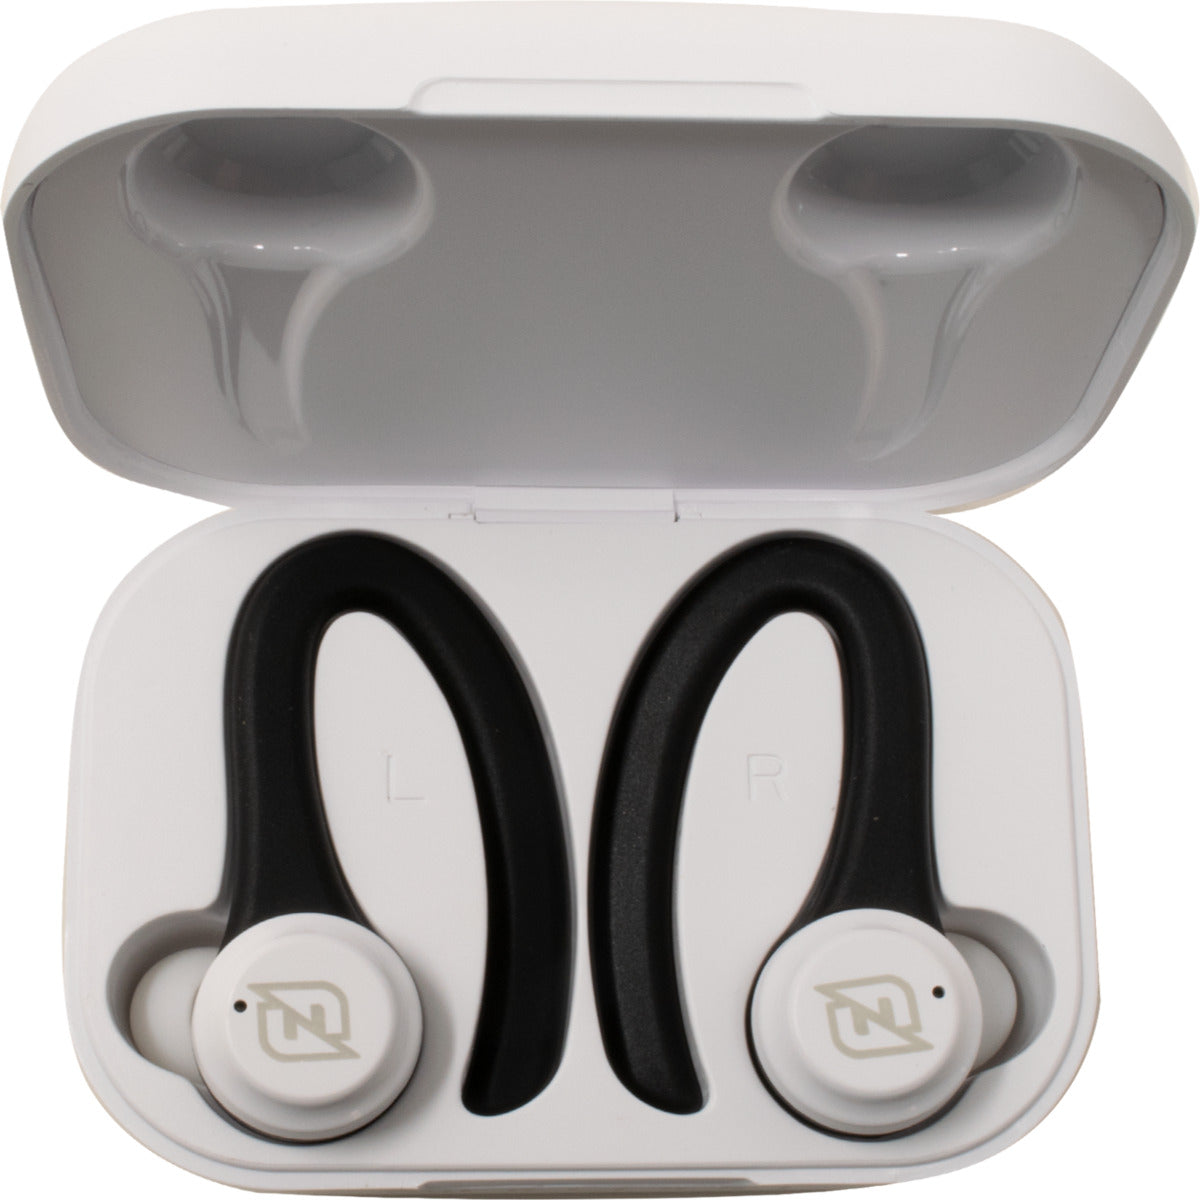 Audifonos Necnon In-Ear Bluetooth Indicador Led Blanco Ntws-Sport (Nbabns12as)